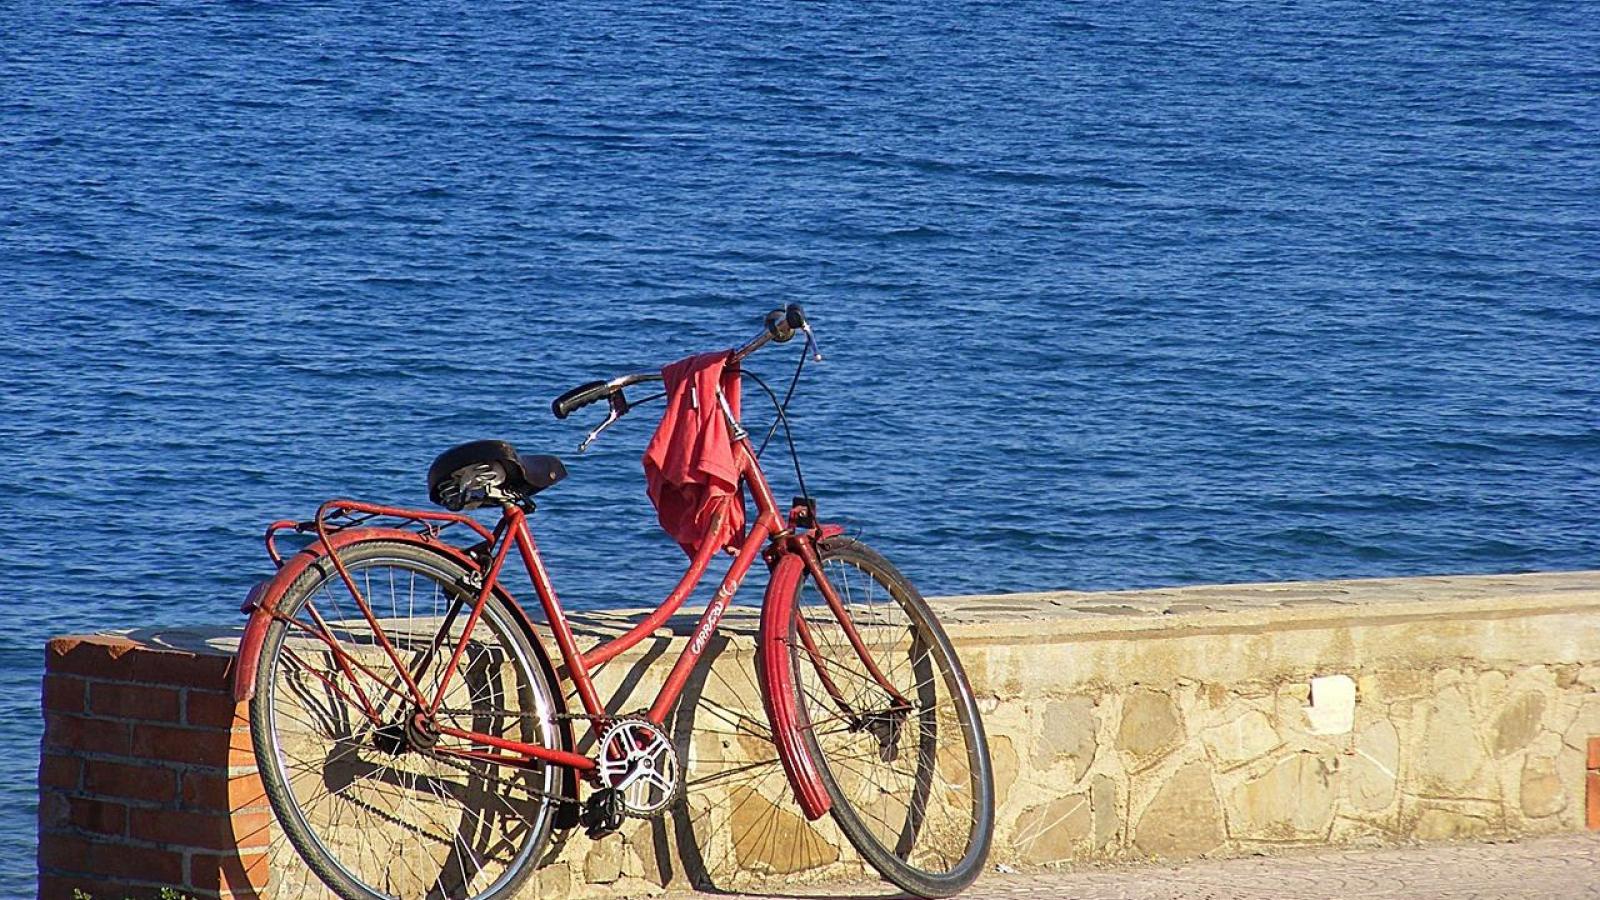 Bike or yoga? Saint-Tropez in sporting mode